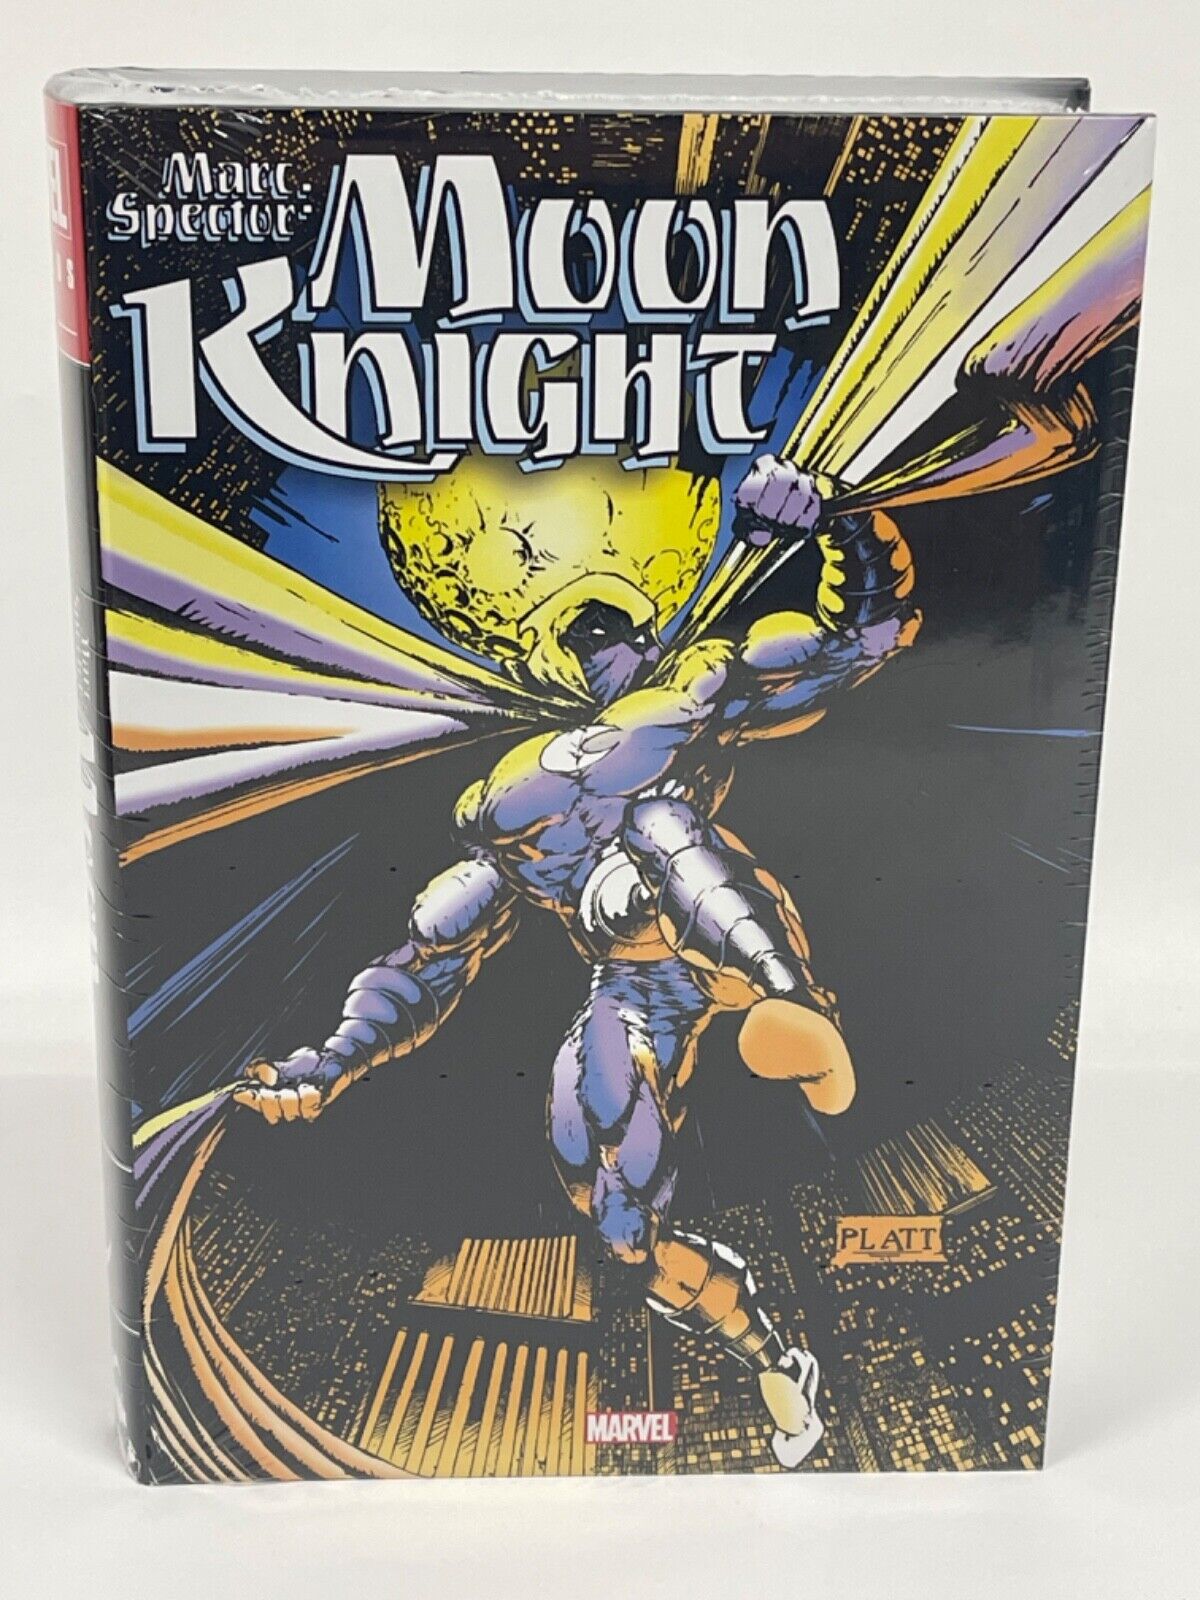 Moon Knight by Marc Spector Omnibus Vol 2 PLATT DM COVER New Marvel HC Sealed